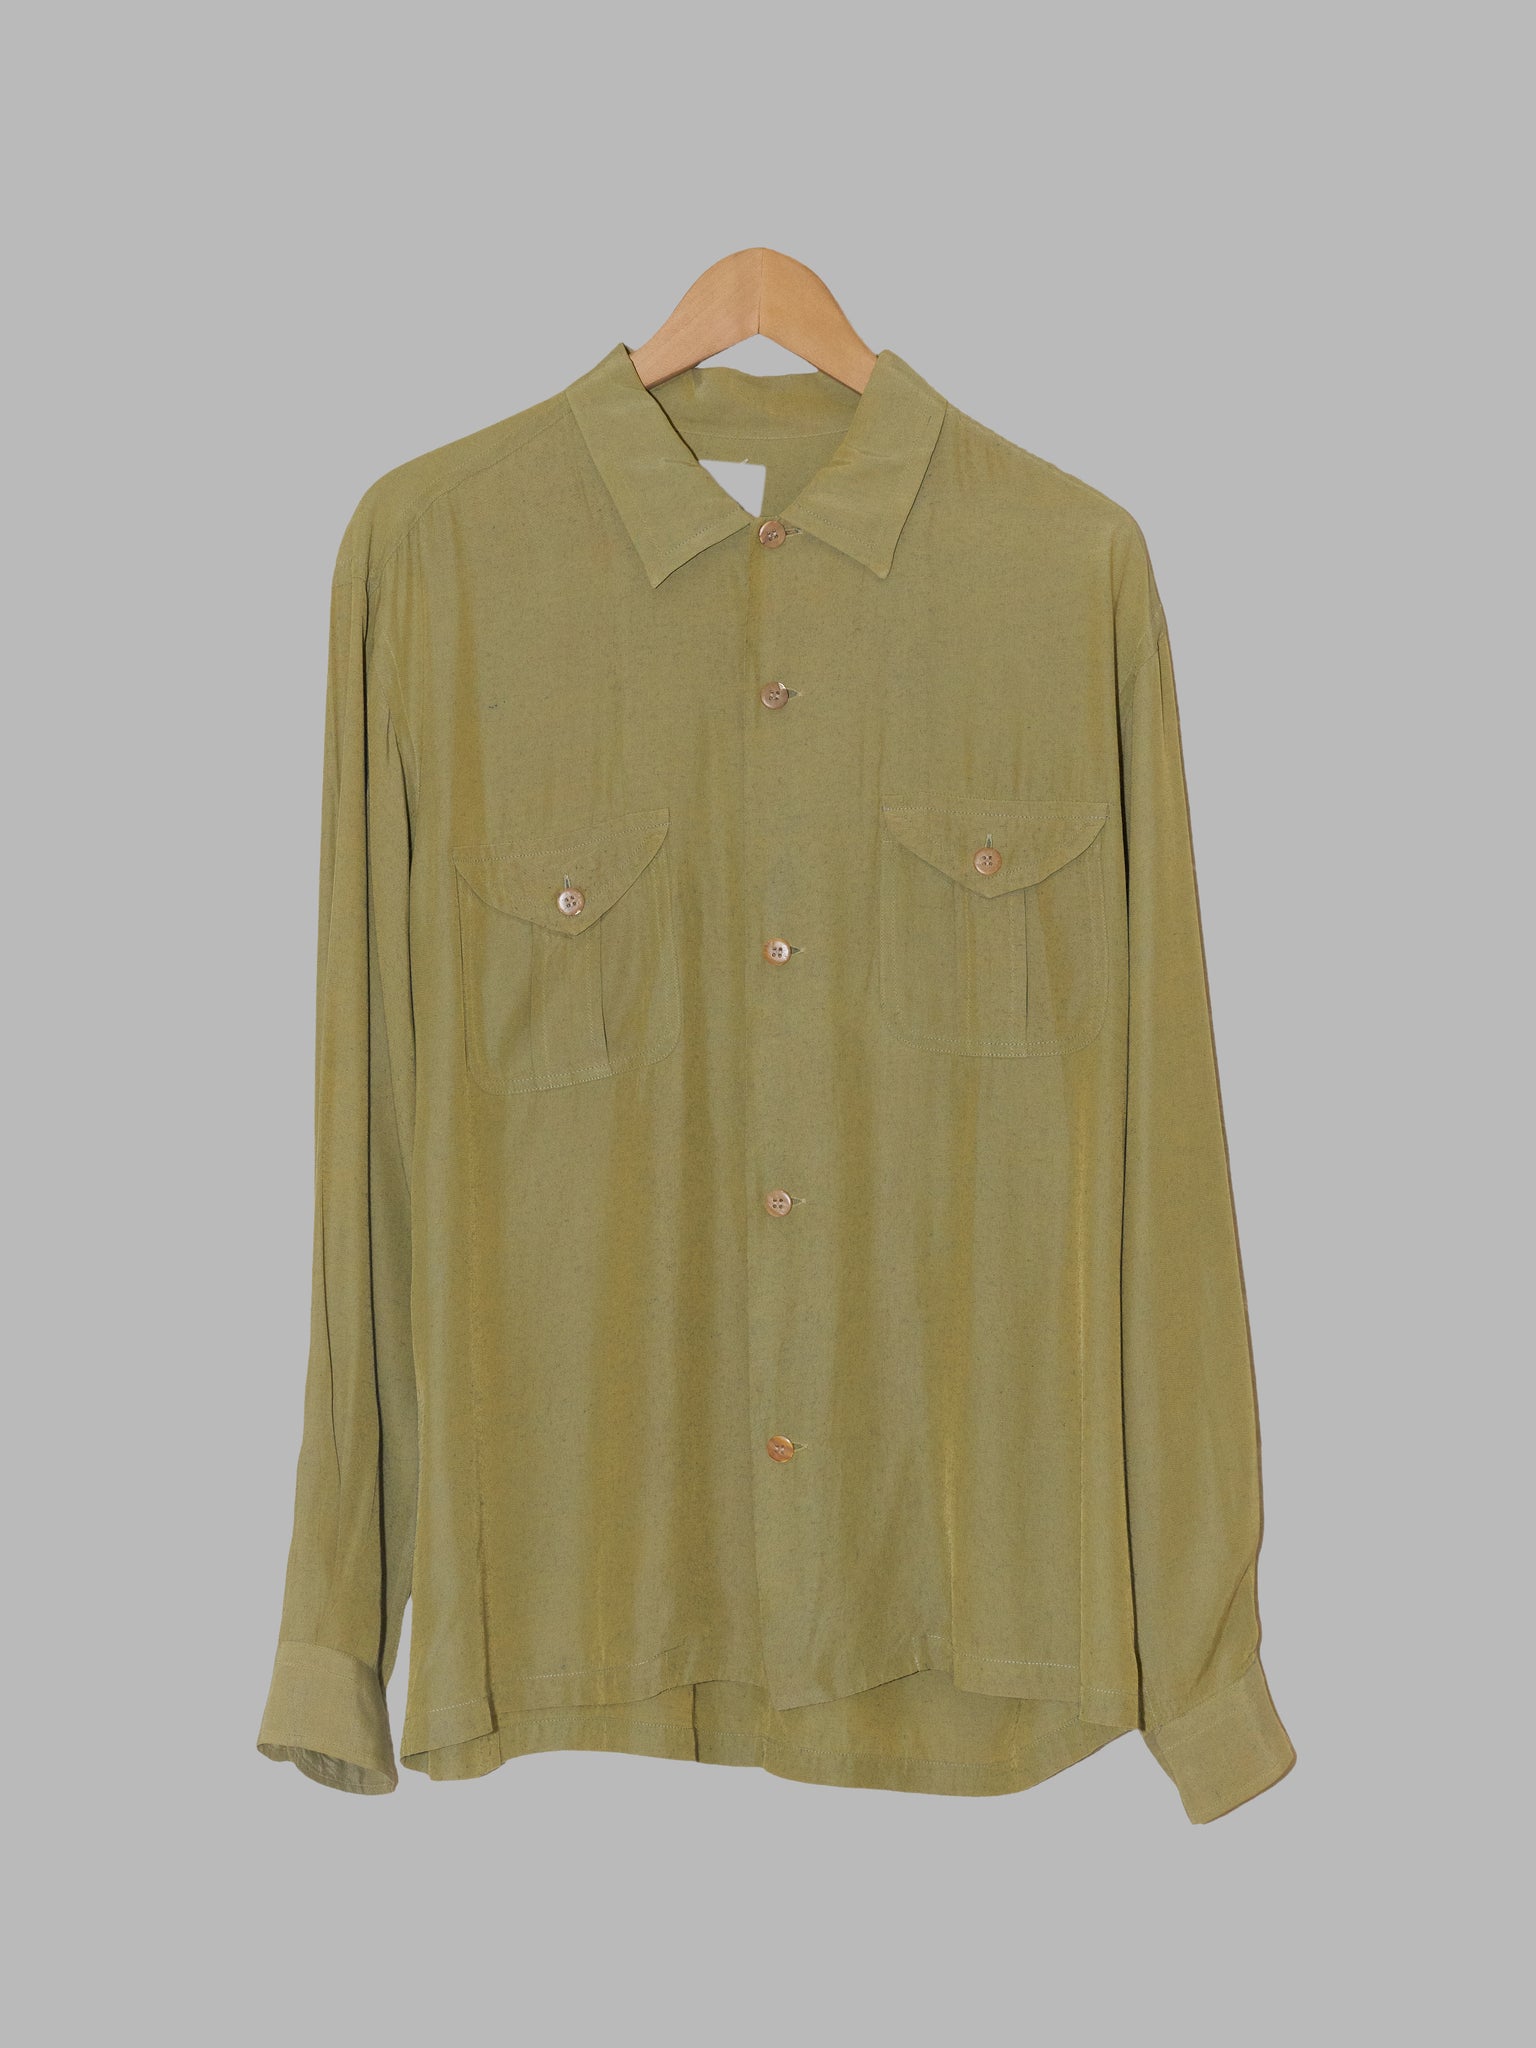 Dezert 1990s green rayon-nylon double pocket shirt - M L